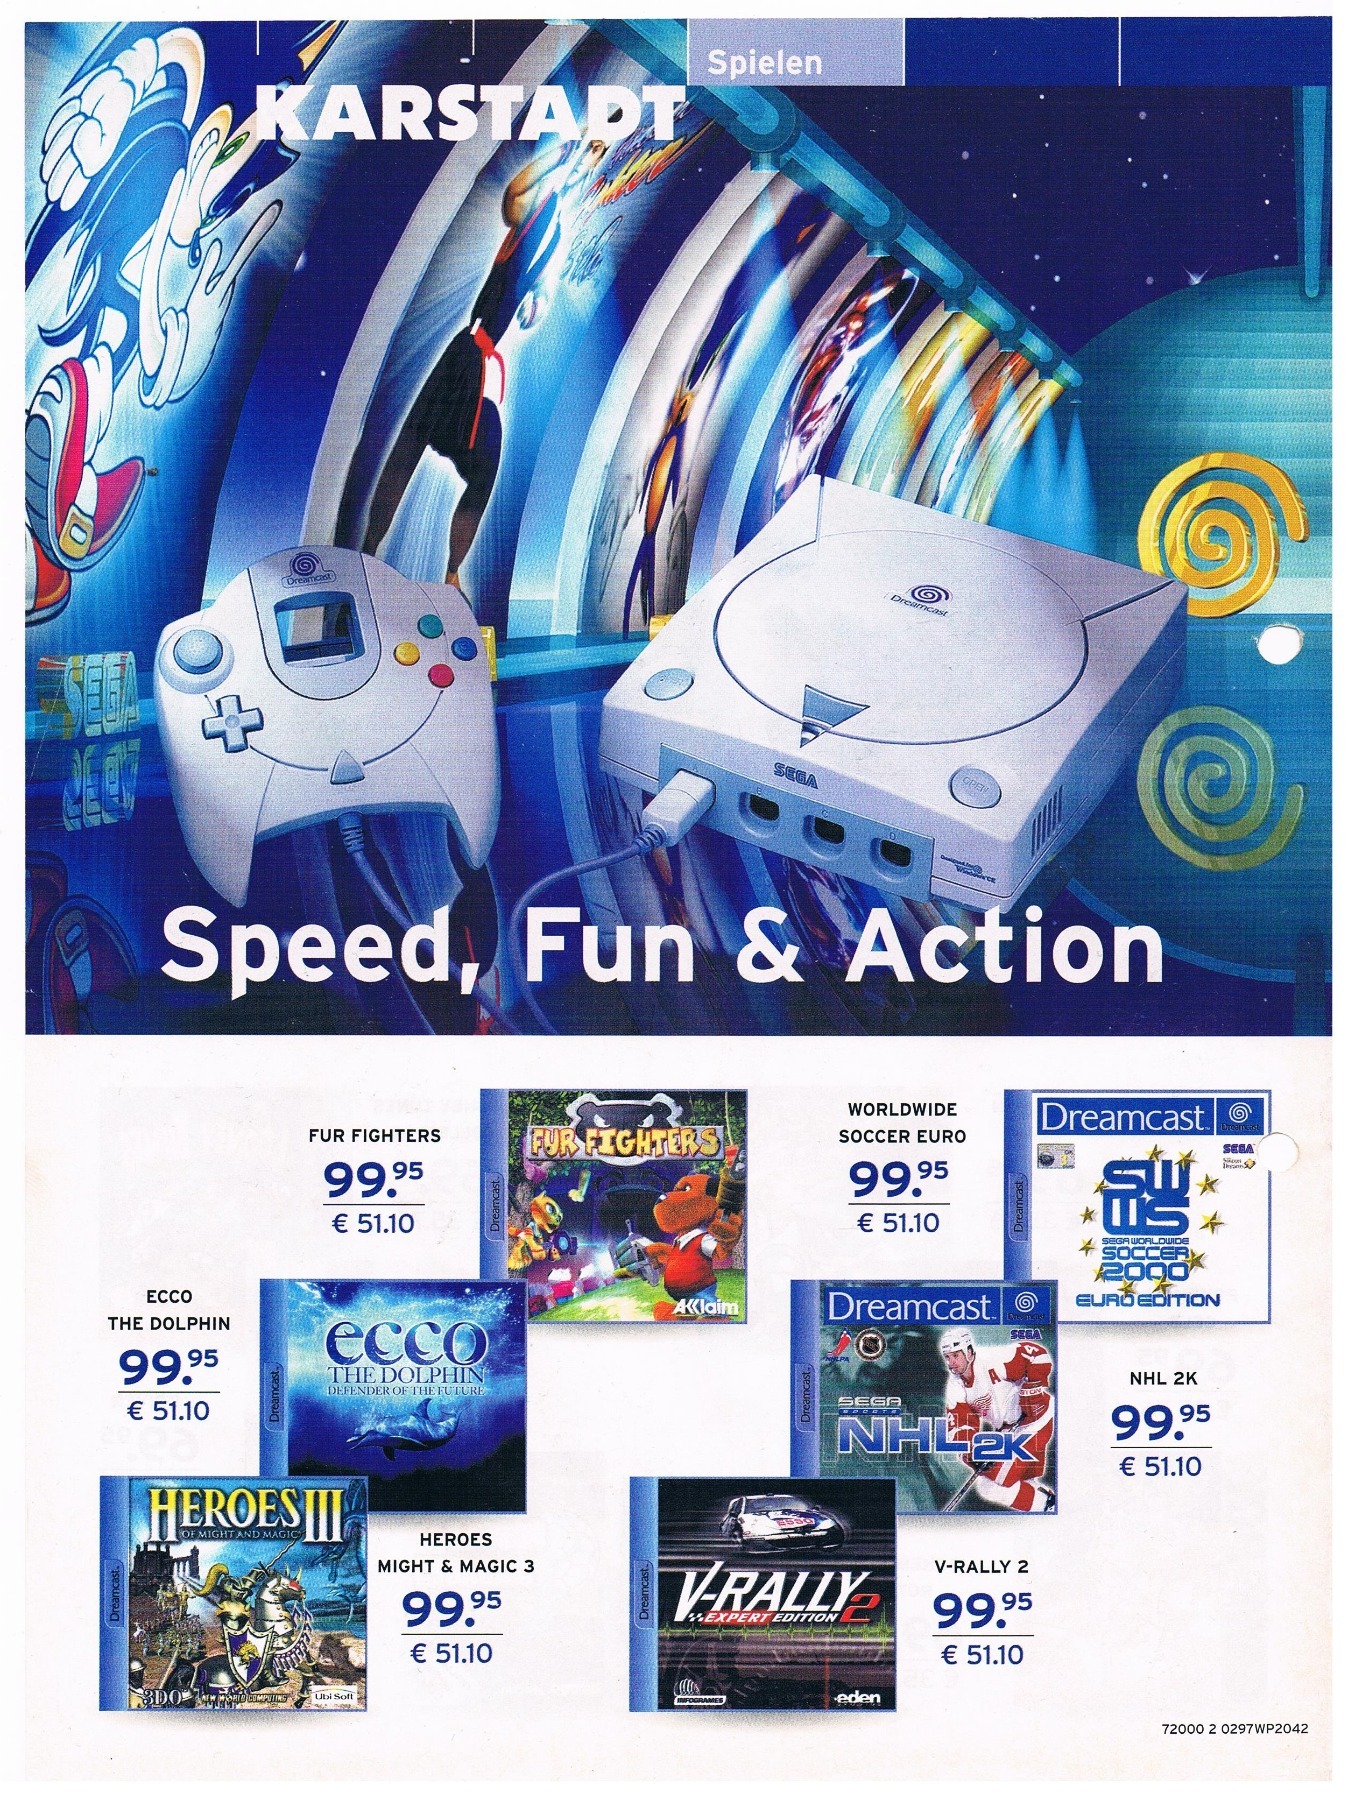 Karstadt - Werbung Game Boy Color / Sega Dreamcast 2